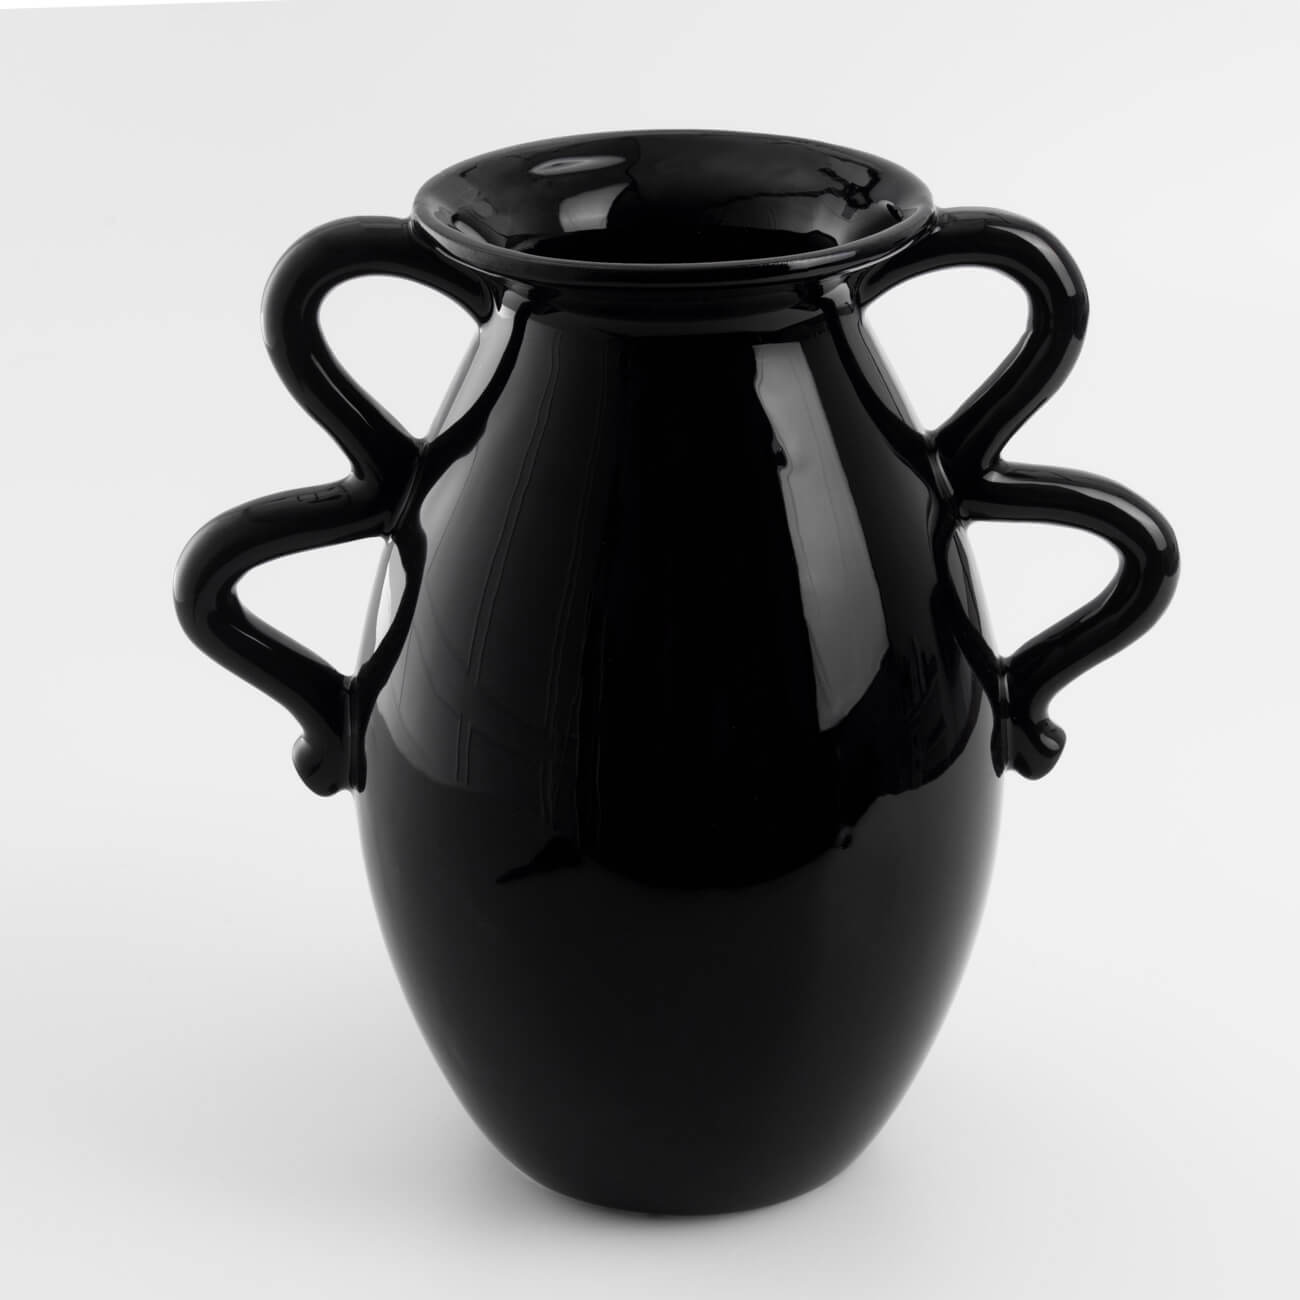 Ваза для цветов, 23 см, декоративная, с ручками, керамика, черная, Loft ваза для цветов 29 см декоративная керамика черная графичное лицо face